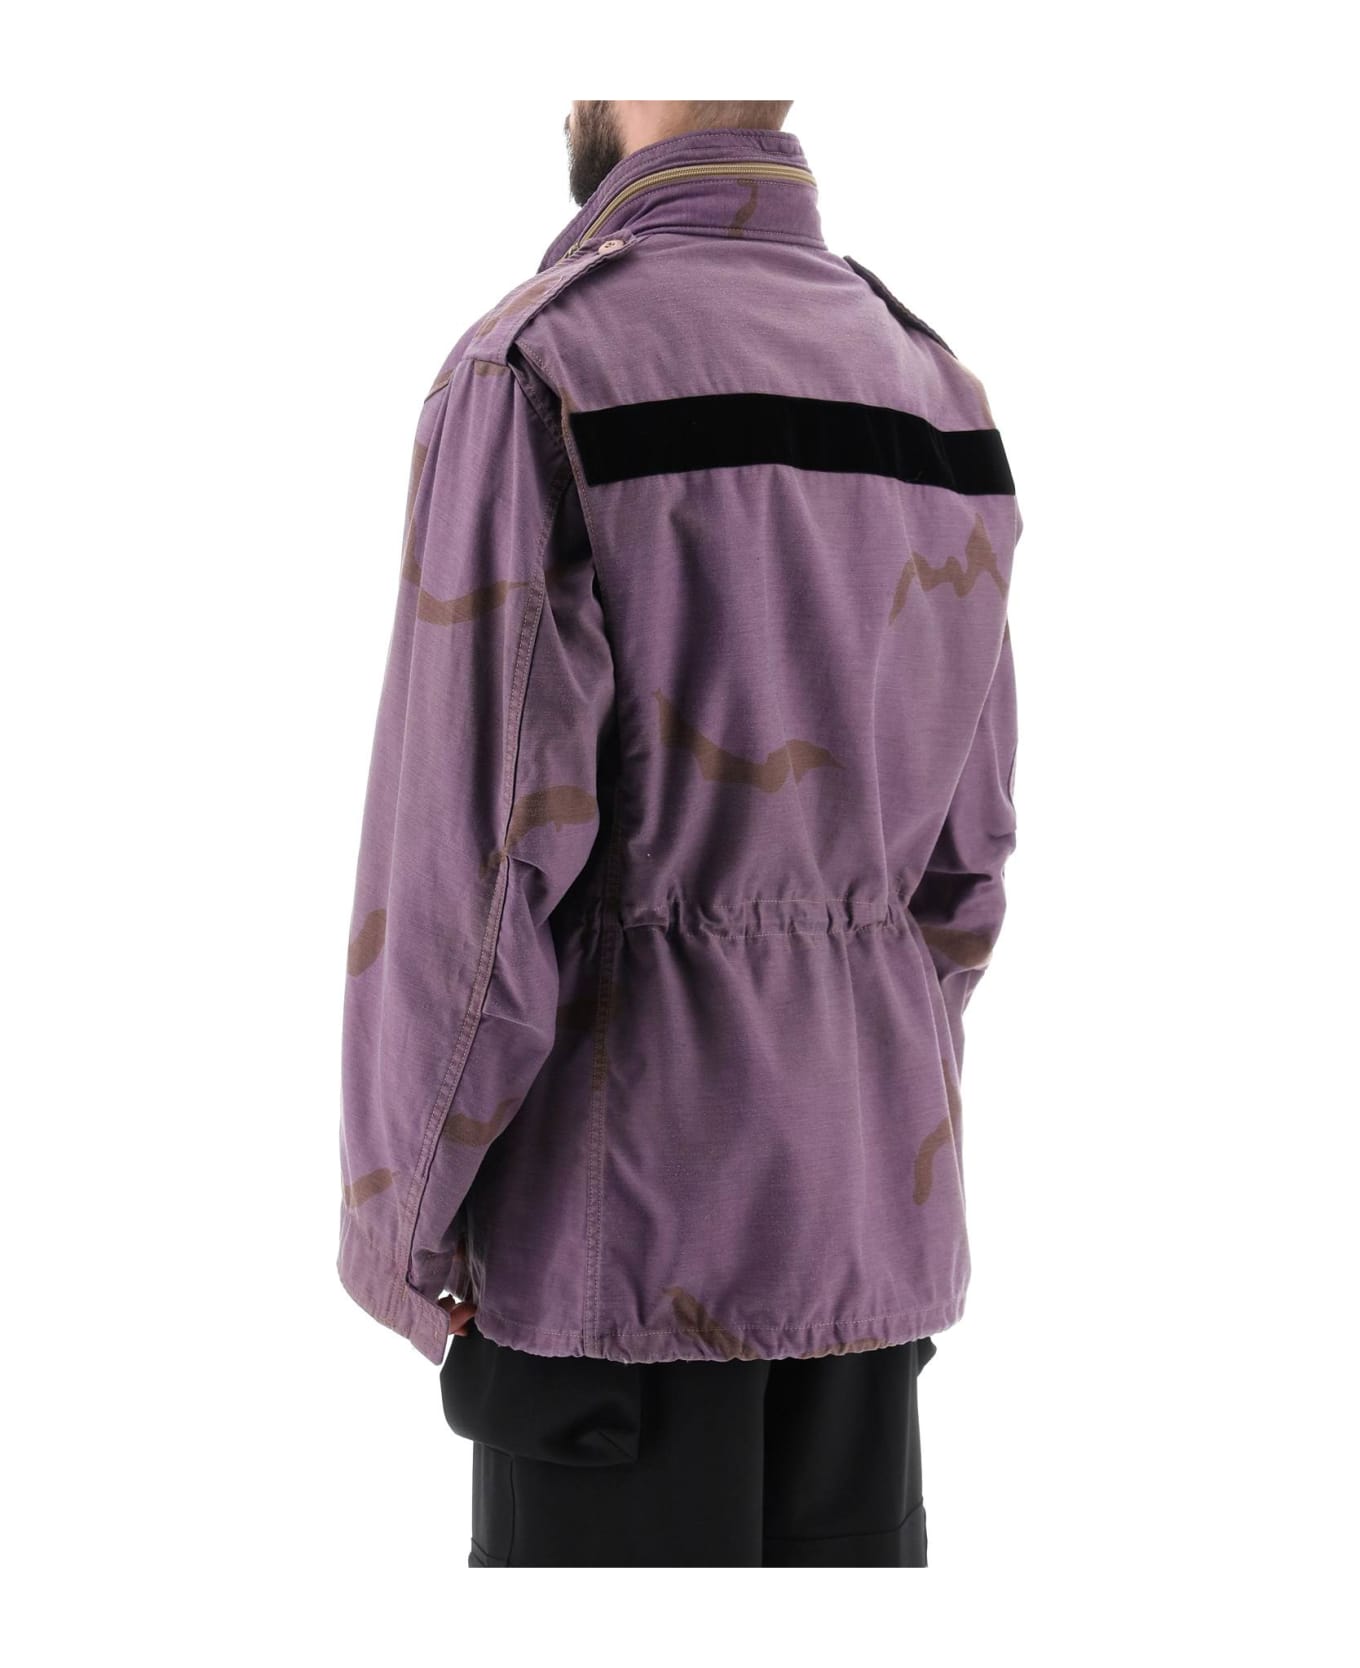 OAMC Field Jacket In Cotton With Camouflage Pattern - PURPLE (Purple)